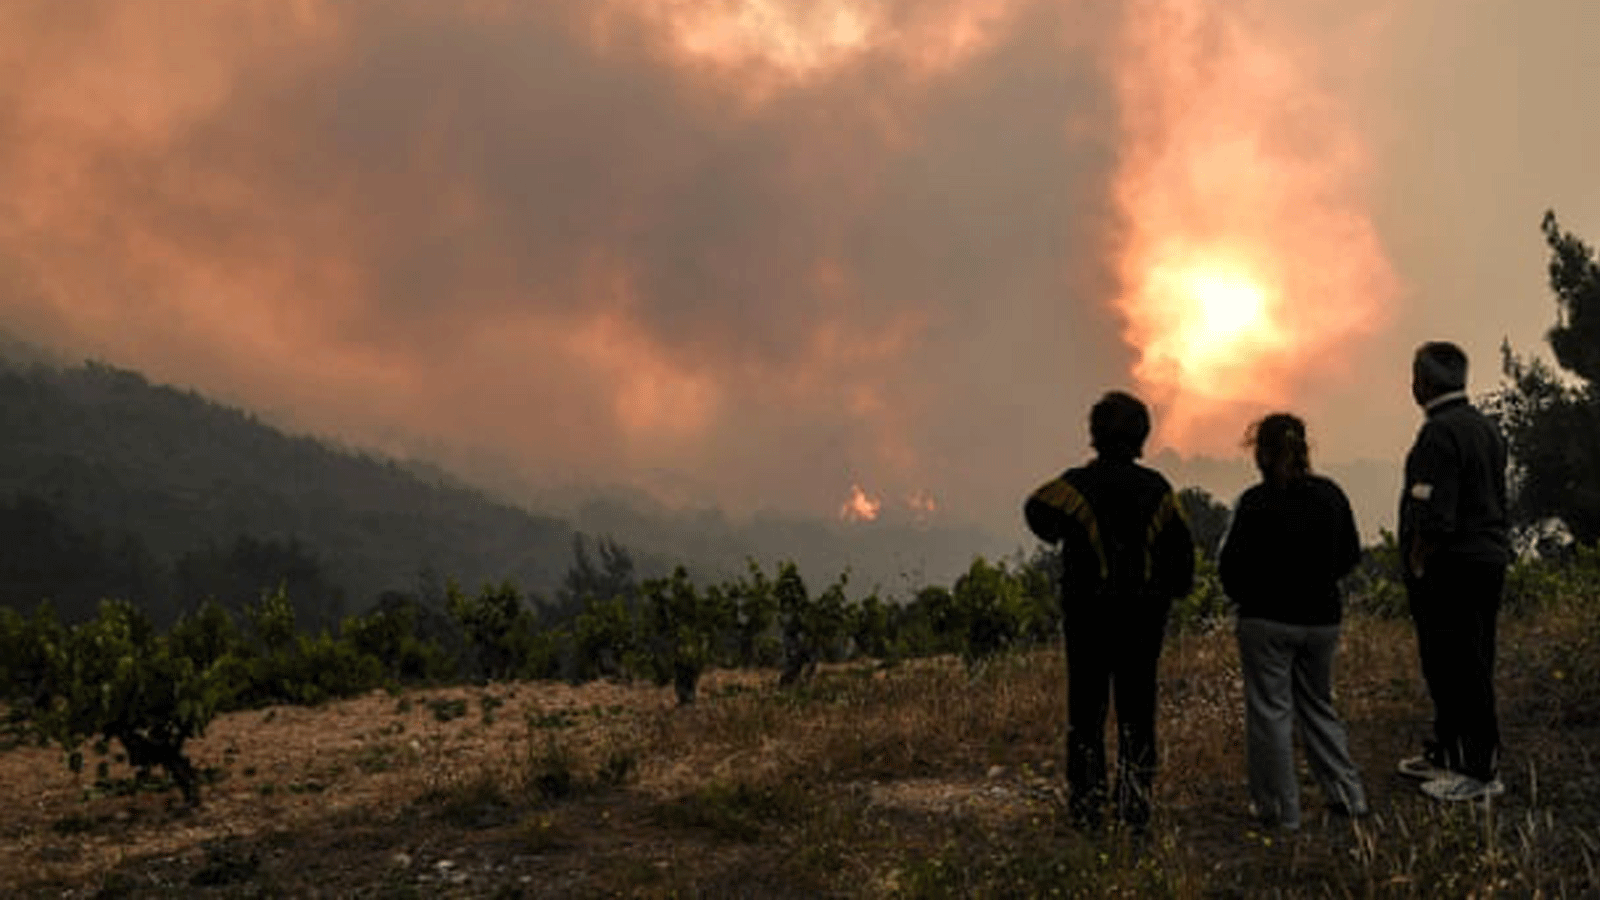 السكان المحليون بالقرب من قرية Pefkaneas، غرب أثينا، ينظرون إلى حرائق الغابات في جبال جيرانيا